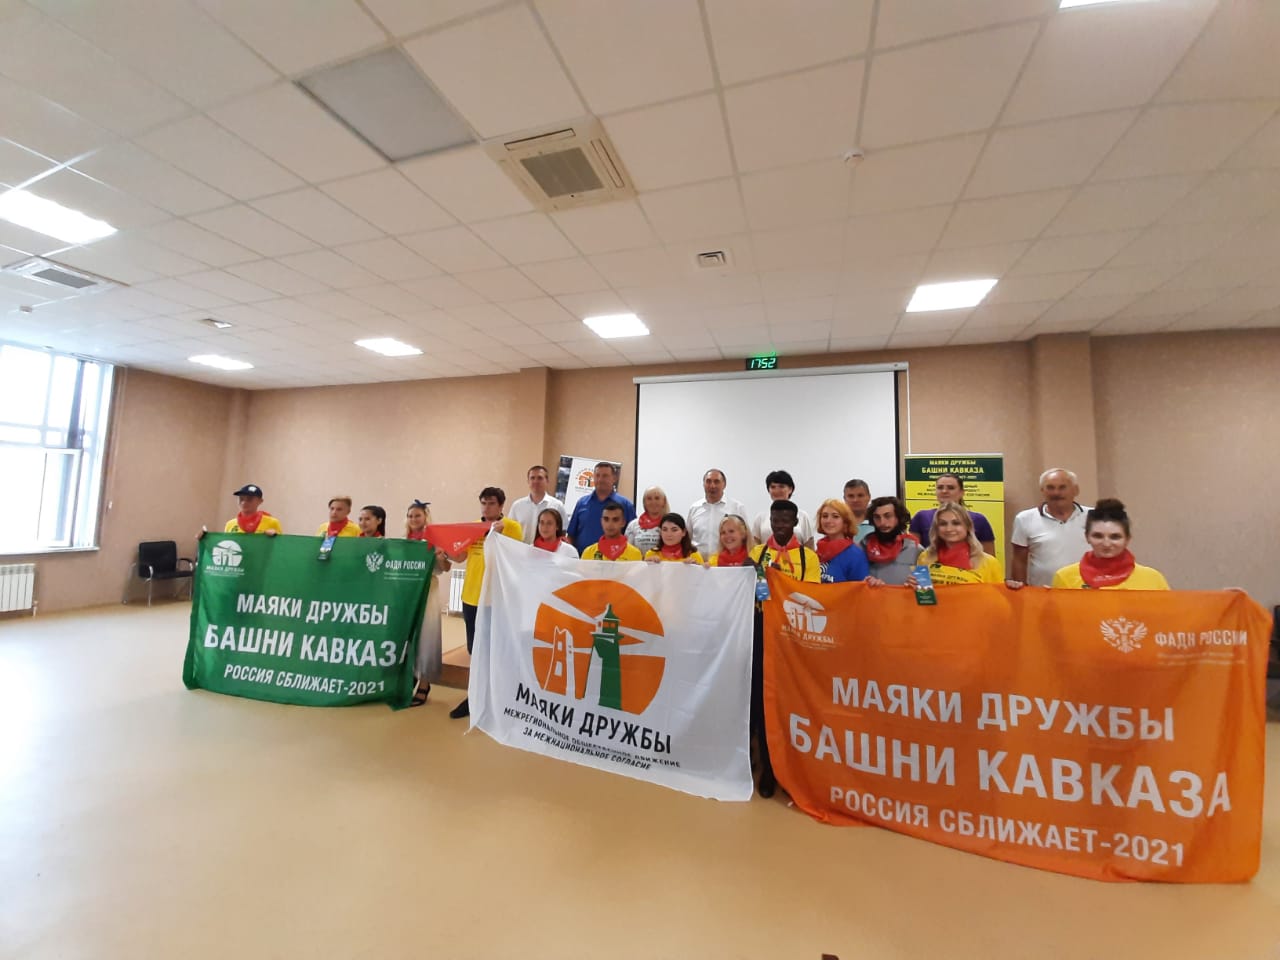 В Кисловодске состоялась конференция волонтерского проекта «Маяки дружбы. Башни Кавказа»